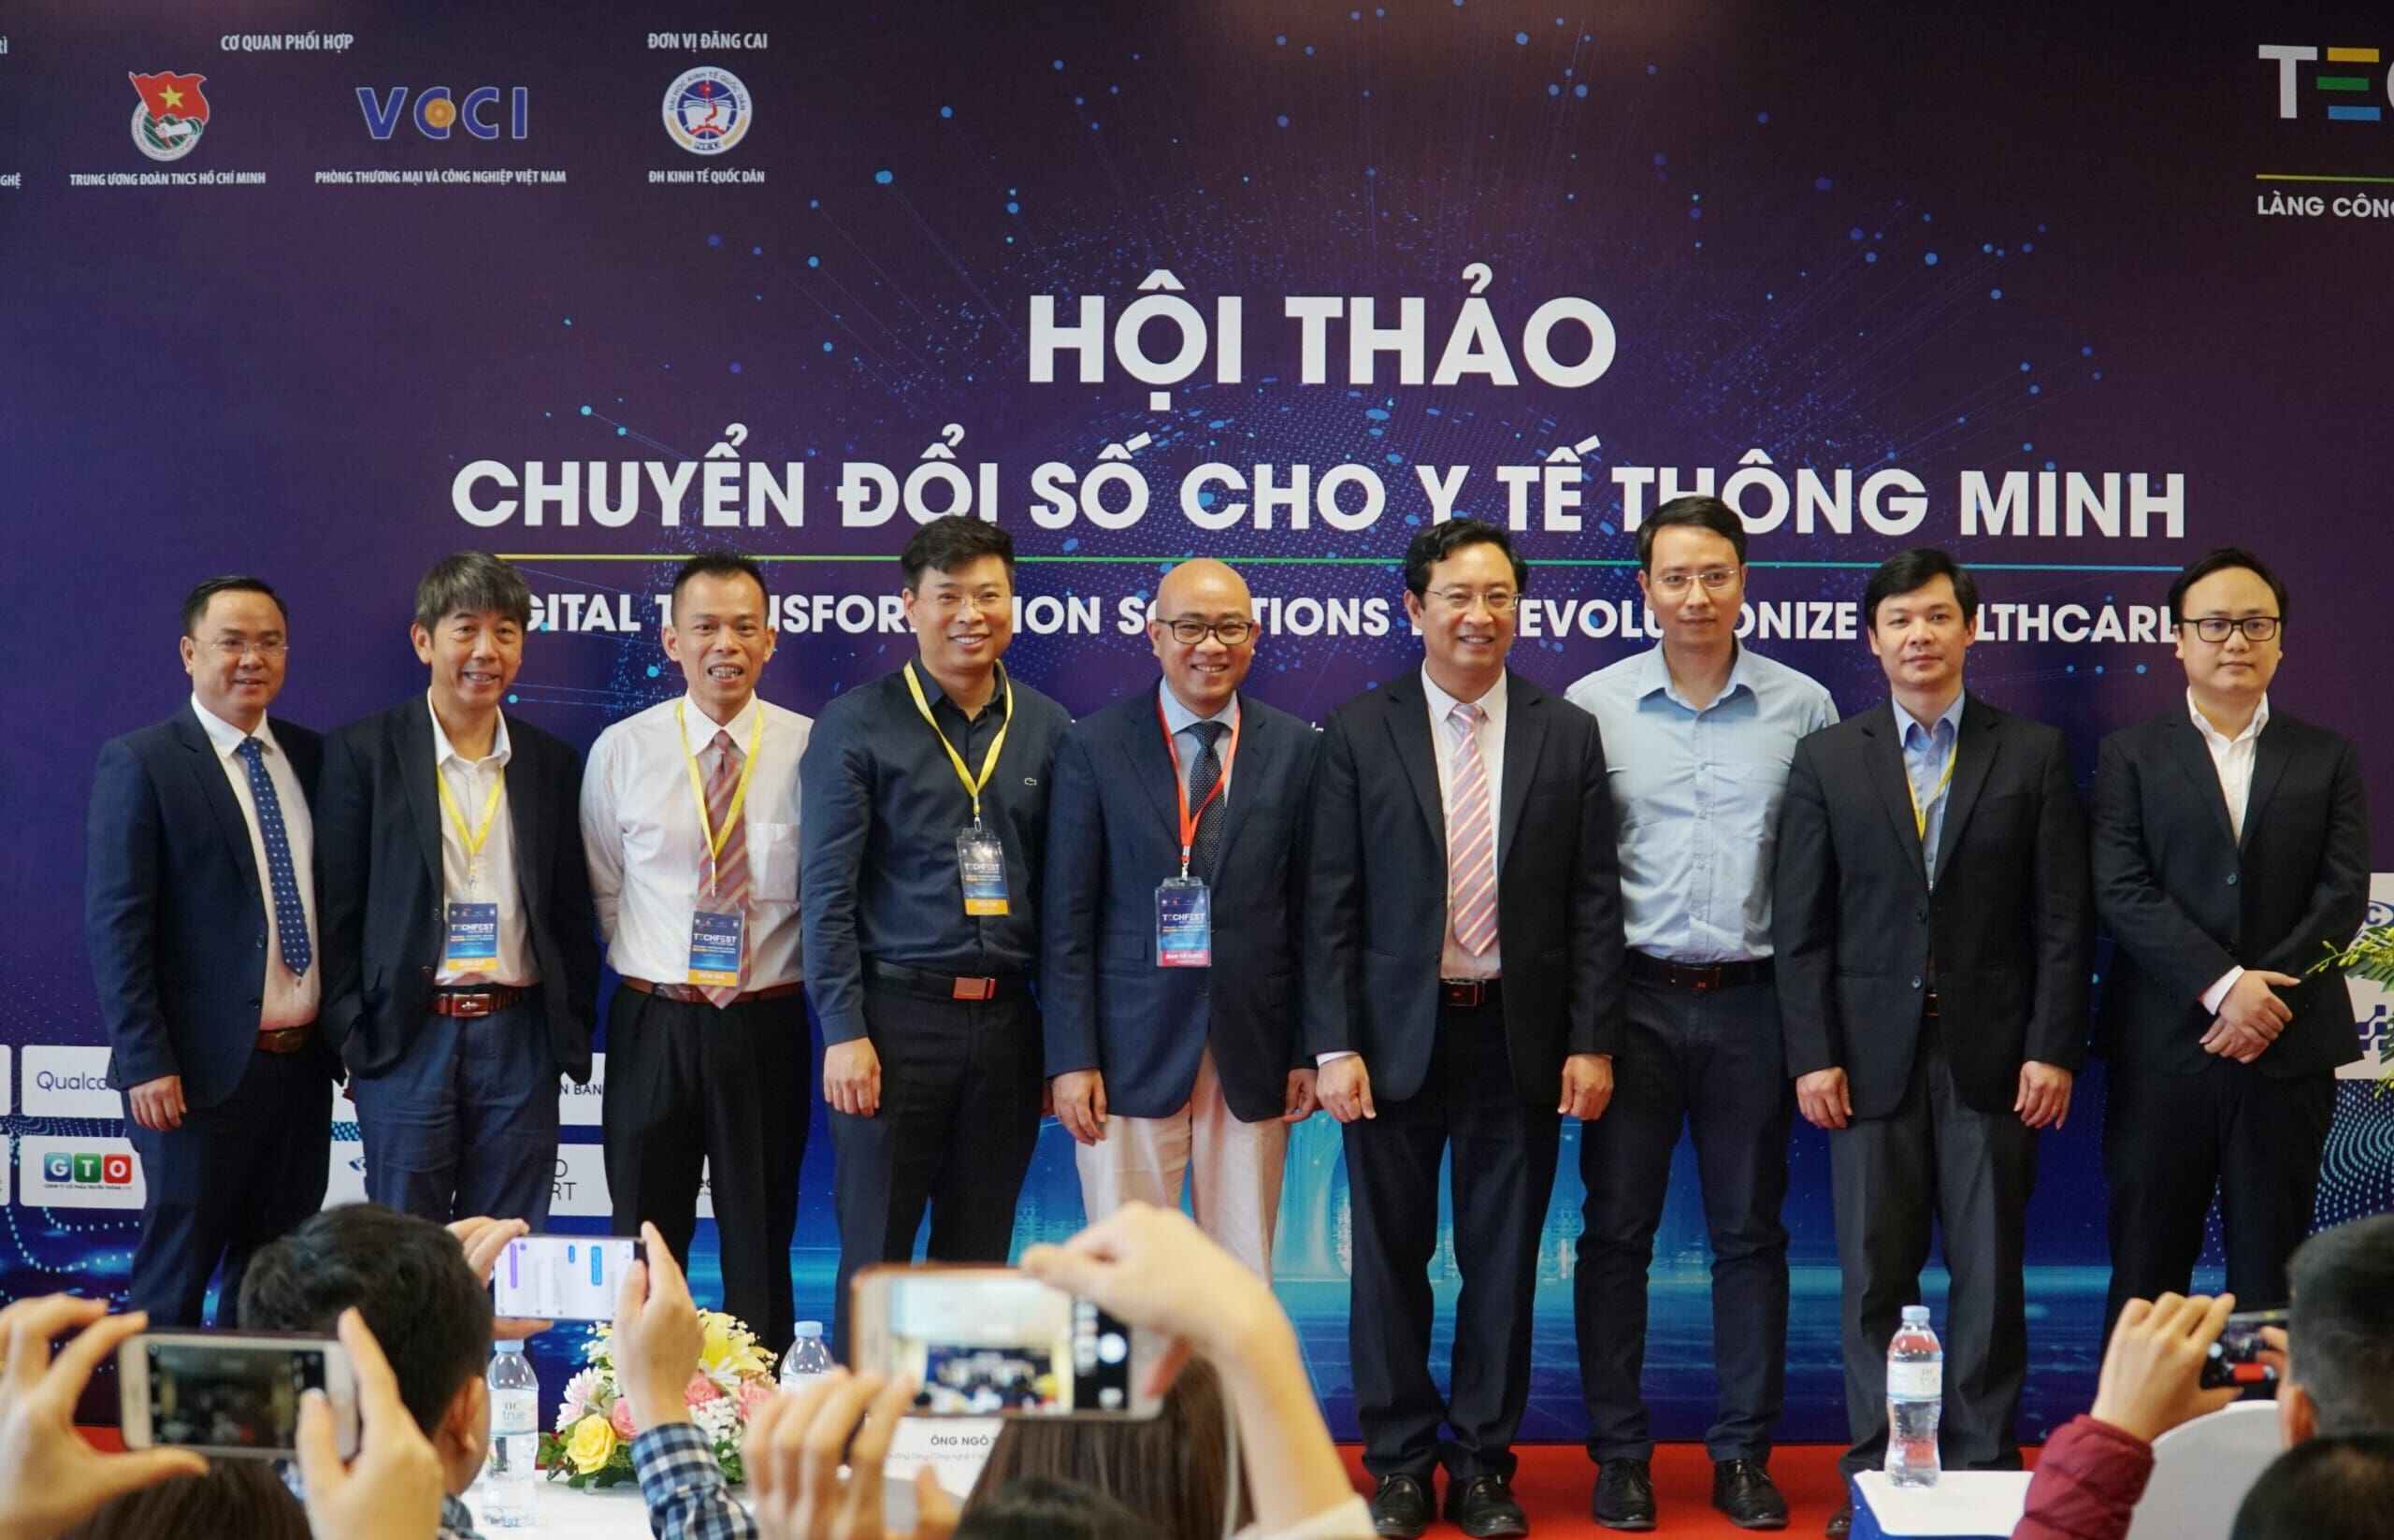 VMED Group và vai trò Trưởng làng Công nghệ Y tế tại Techfest Vietnam